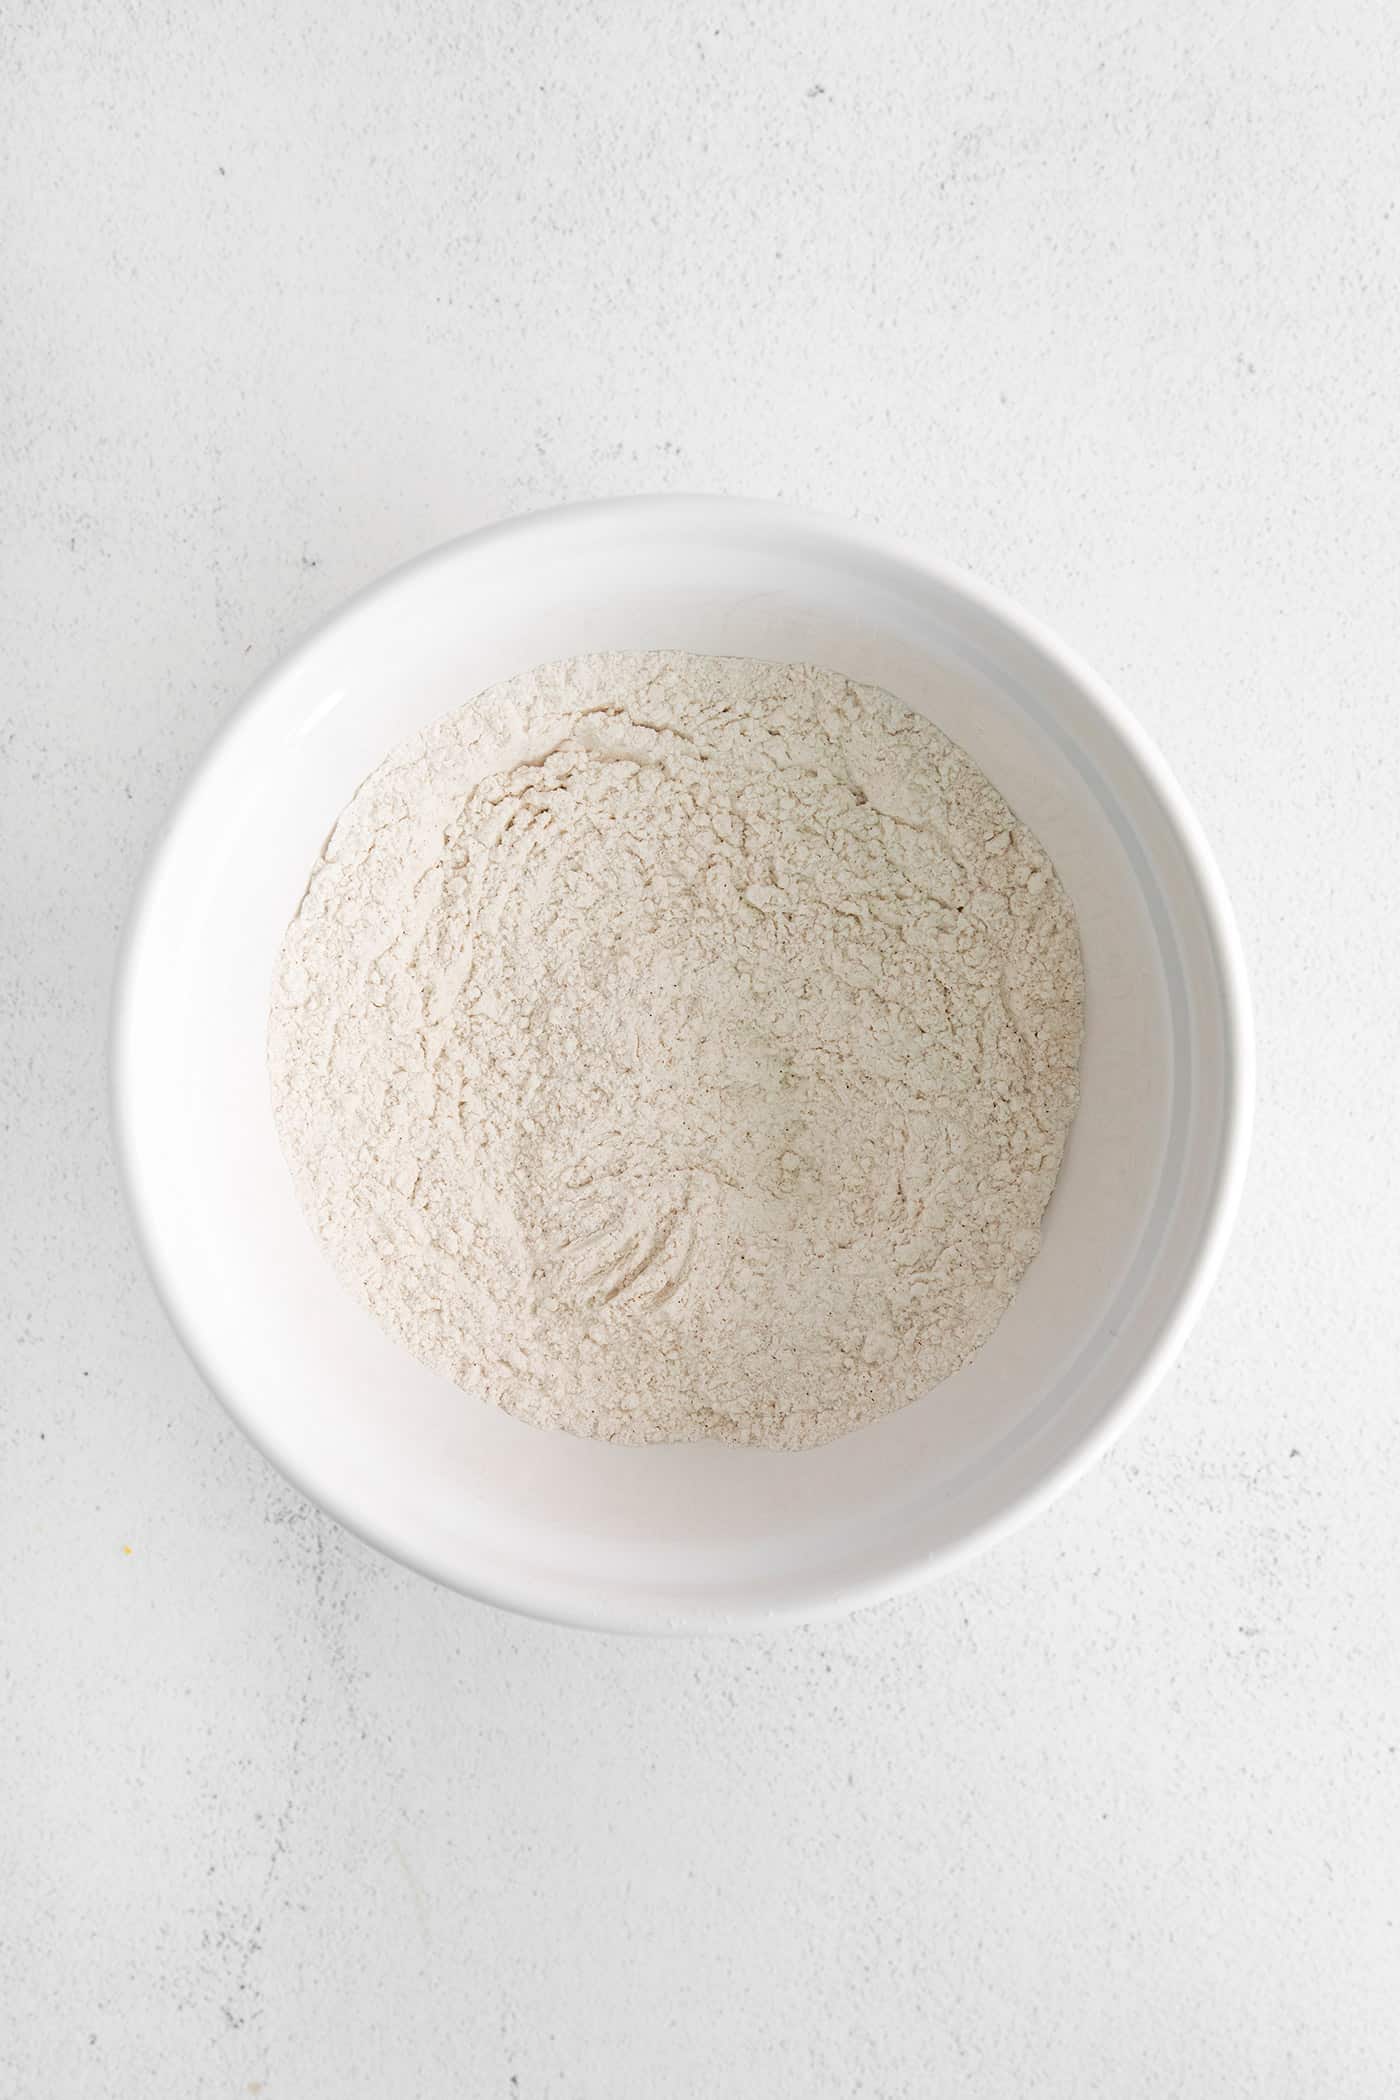 Flour in a white bowl